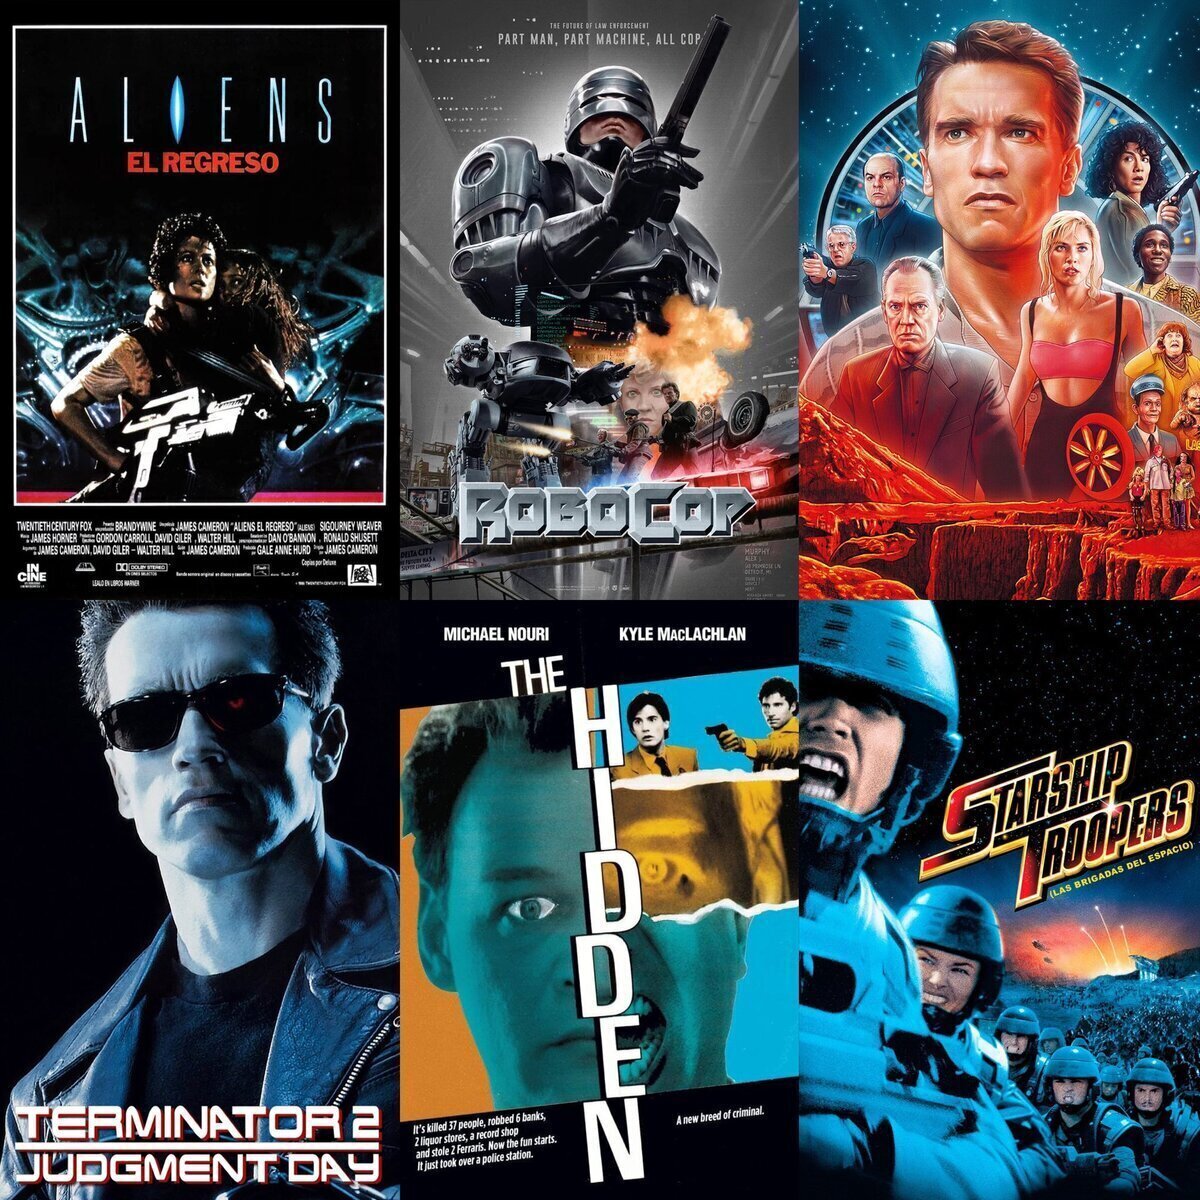 Seis películas PERFECTAS de acción Sci-Fi que no permiten discusión.